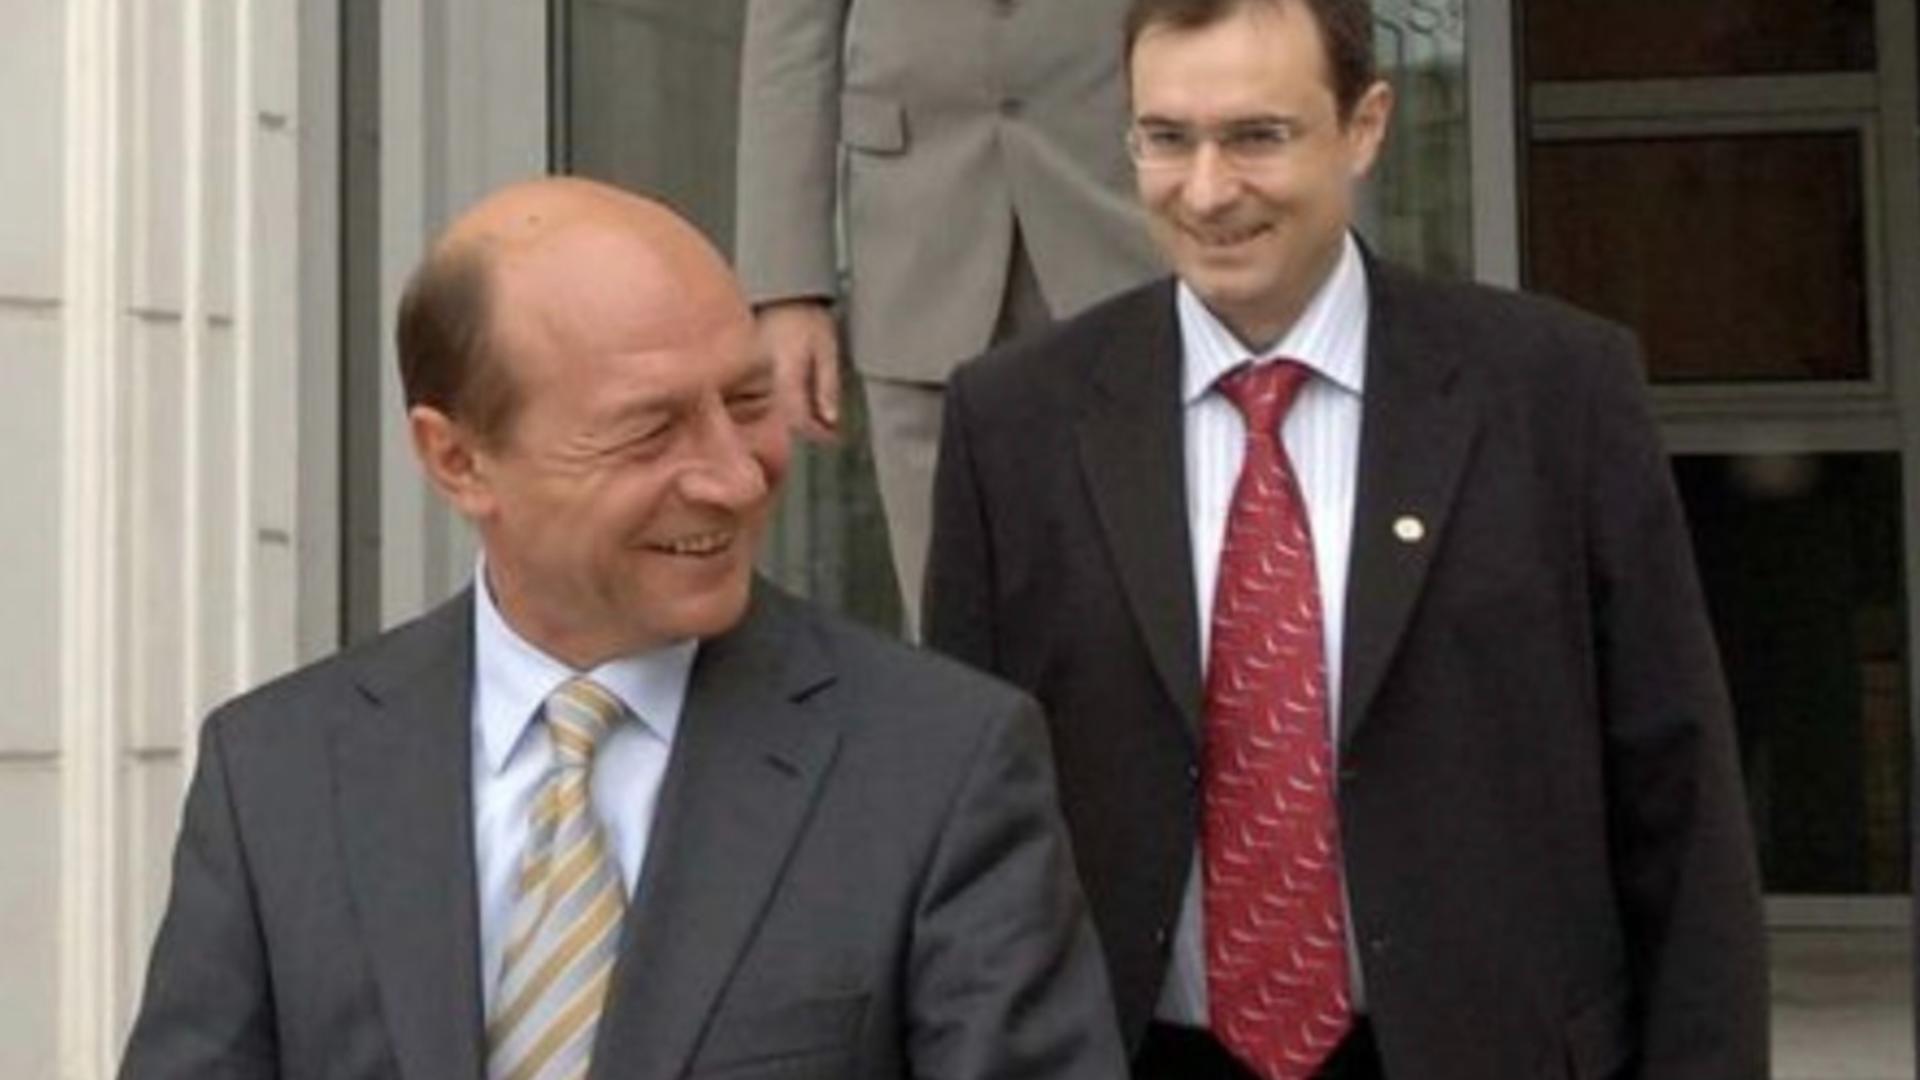 Traian Băsescu, prins cu minciuna: de câte ori l-a văzut, de fapt, pe Coldea? Cocoș: L-am cunoscut pe general la Neptun, în casa lui Băsescu  